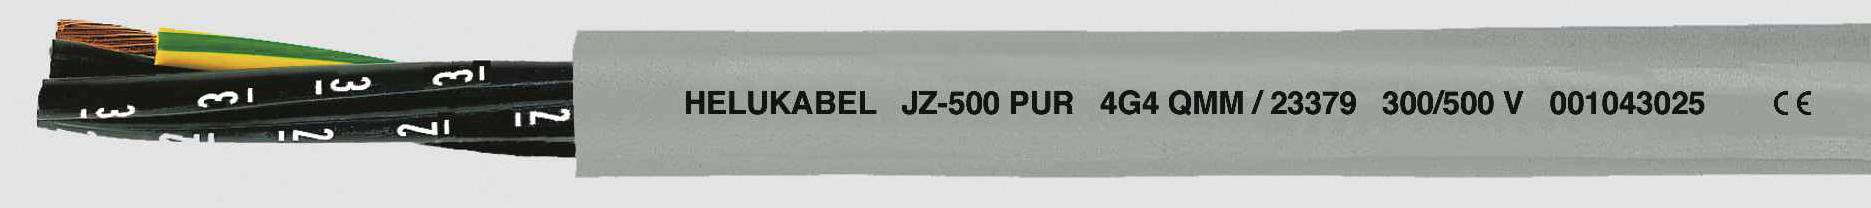 HELUKABEL JZ-500 PUR Steuerleitung 7 G 2.50 mm² Grau 23377 100 m